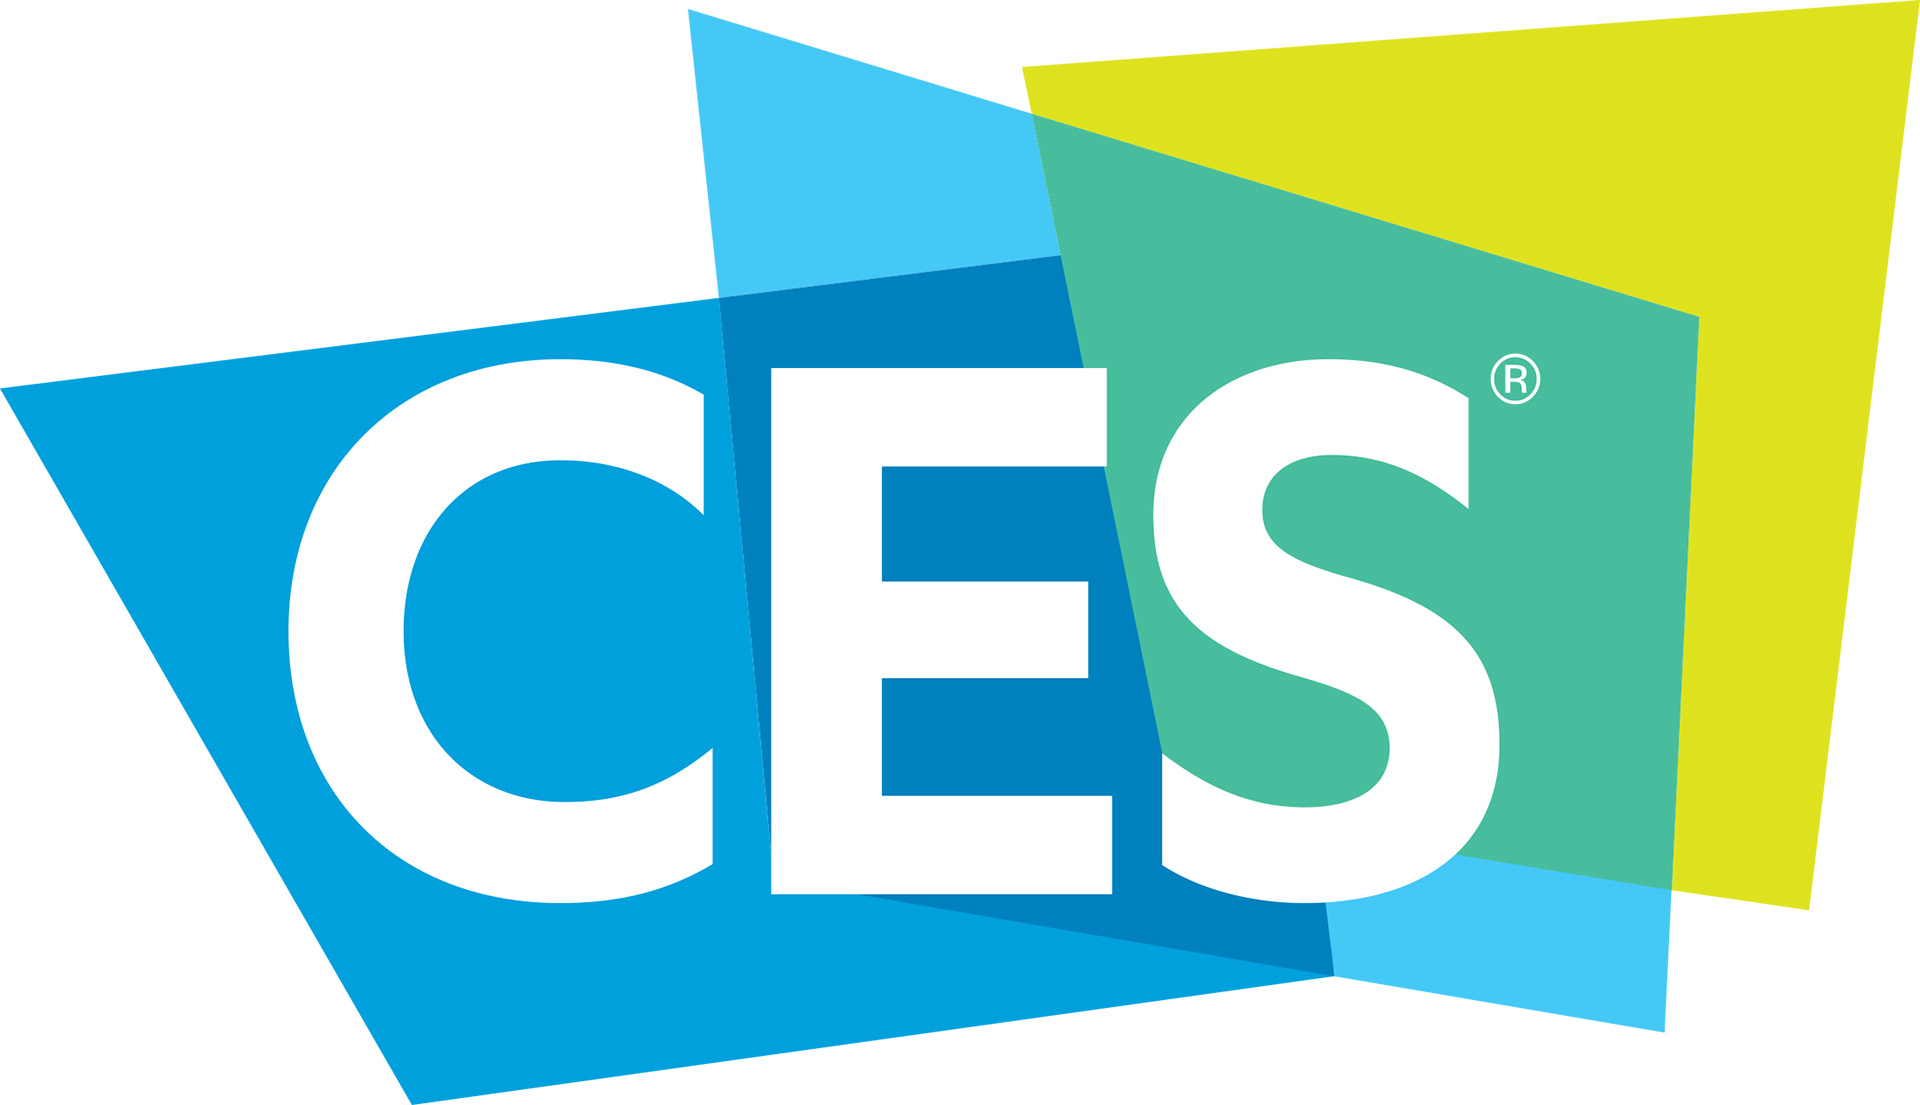 C E S logo